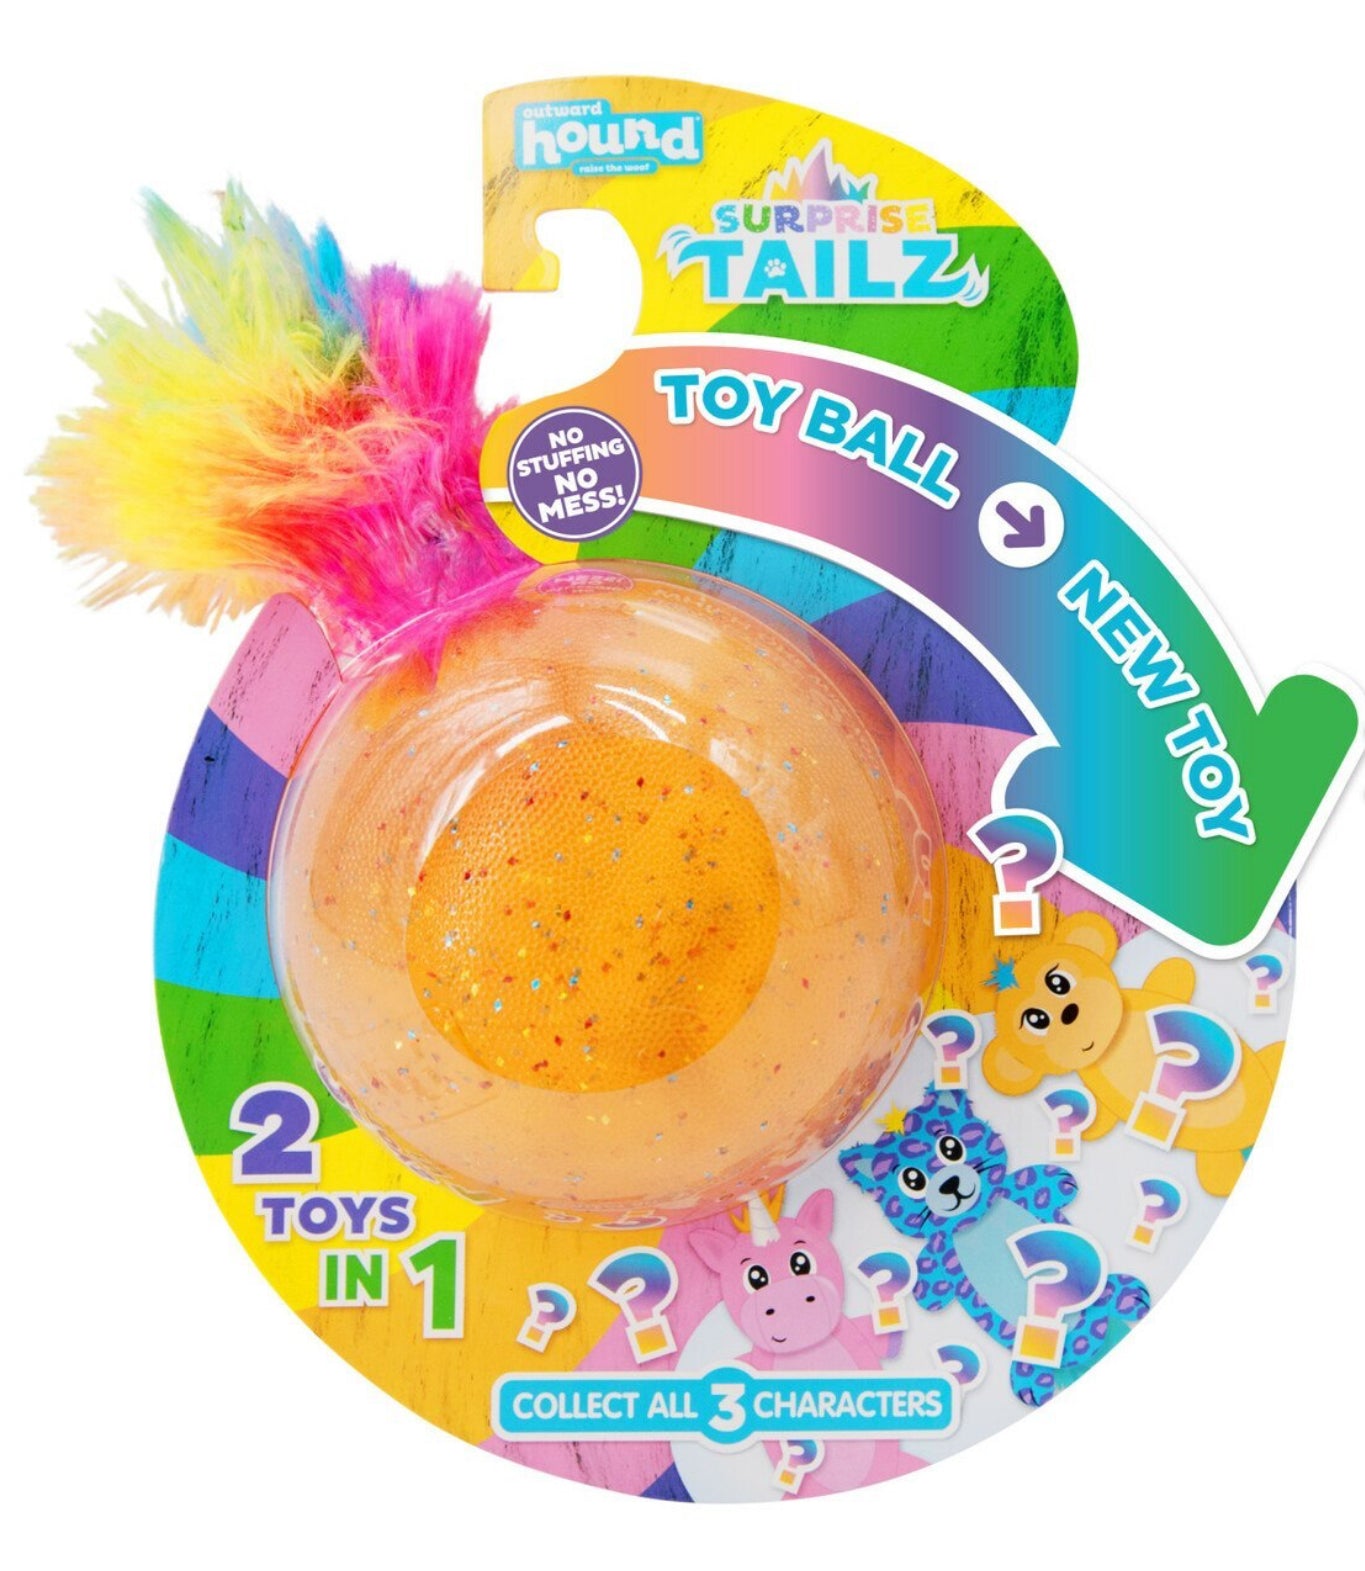 Outwasrd Hound Surprise Tailz 2-in-1 Ball + Plush Toy